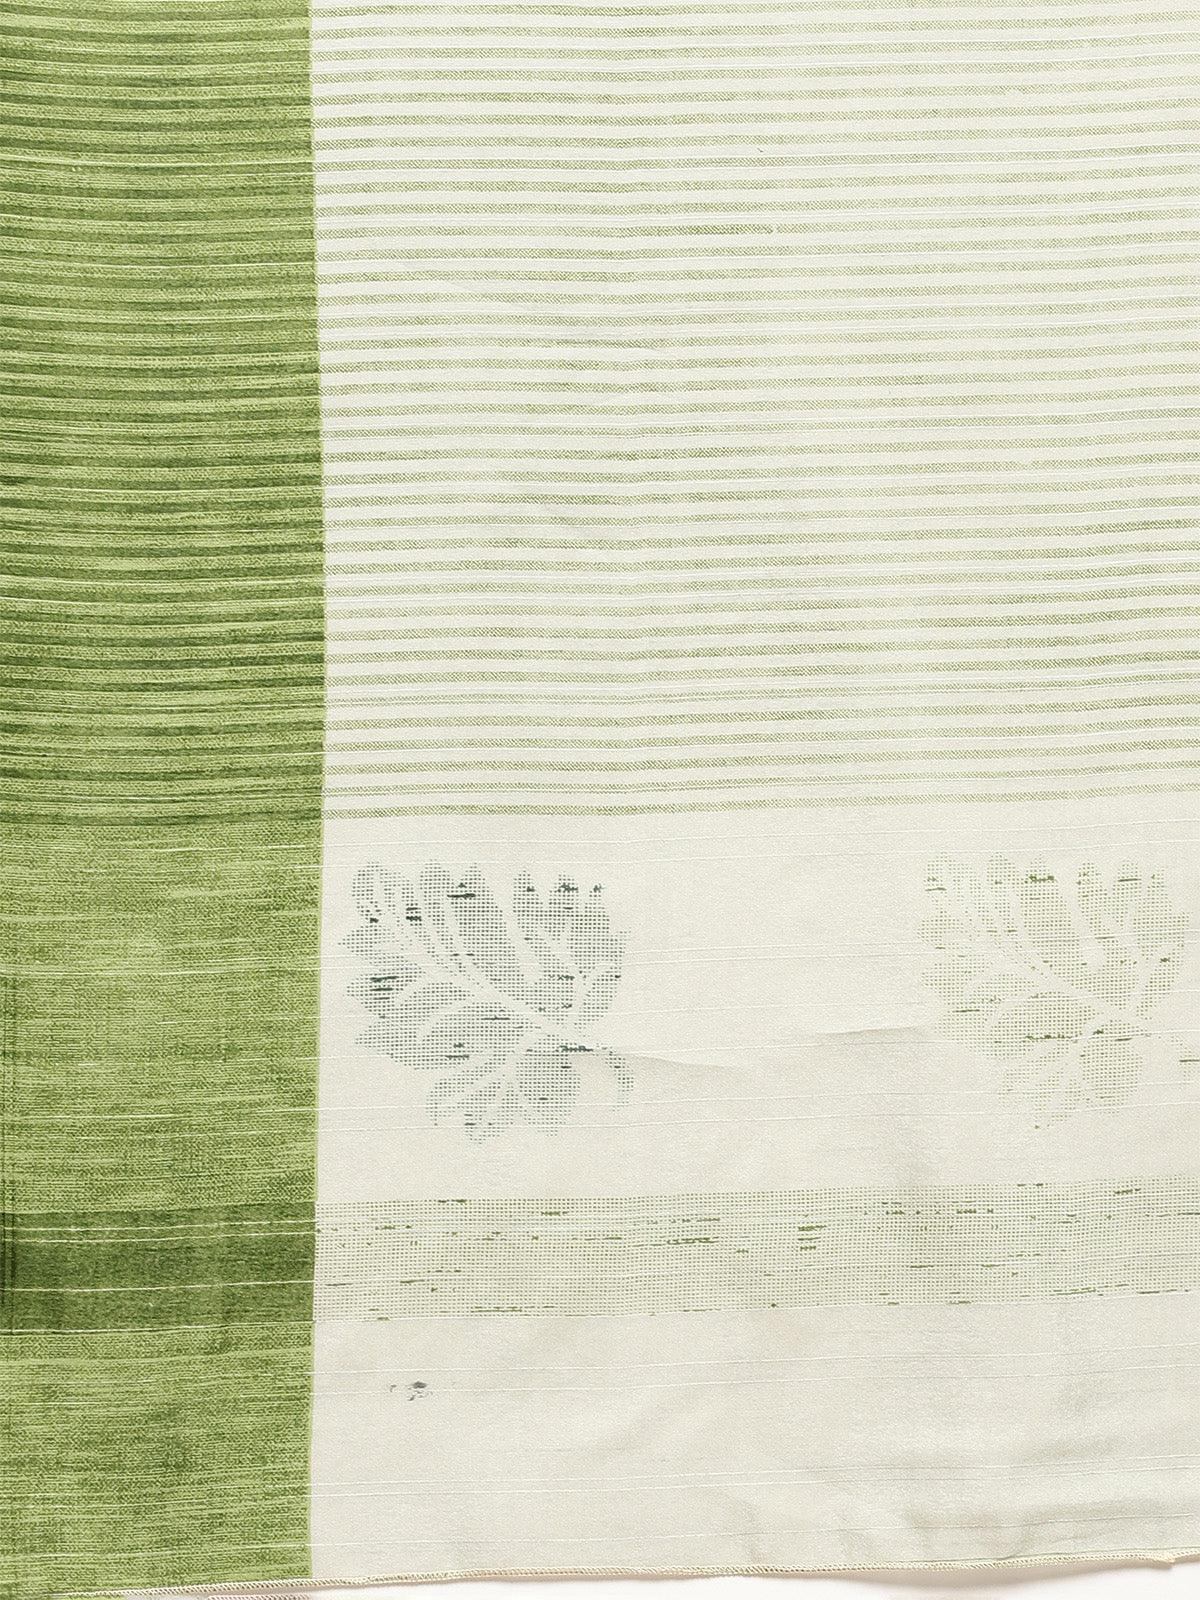 Women's Bhagalpuri Silk Sea Green Printed Saree With Blouse Piece - Odette